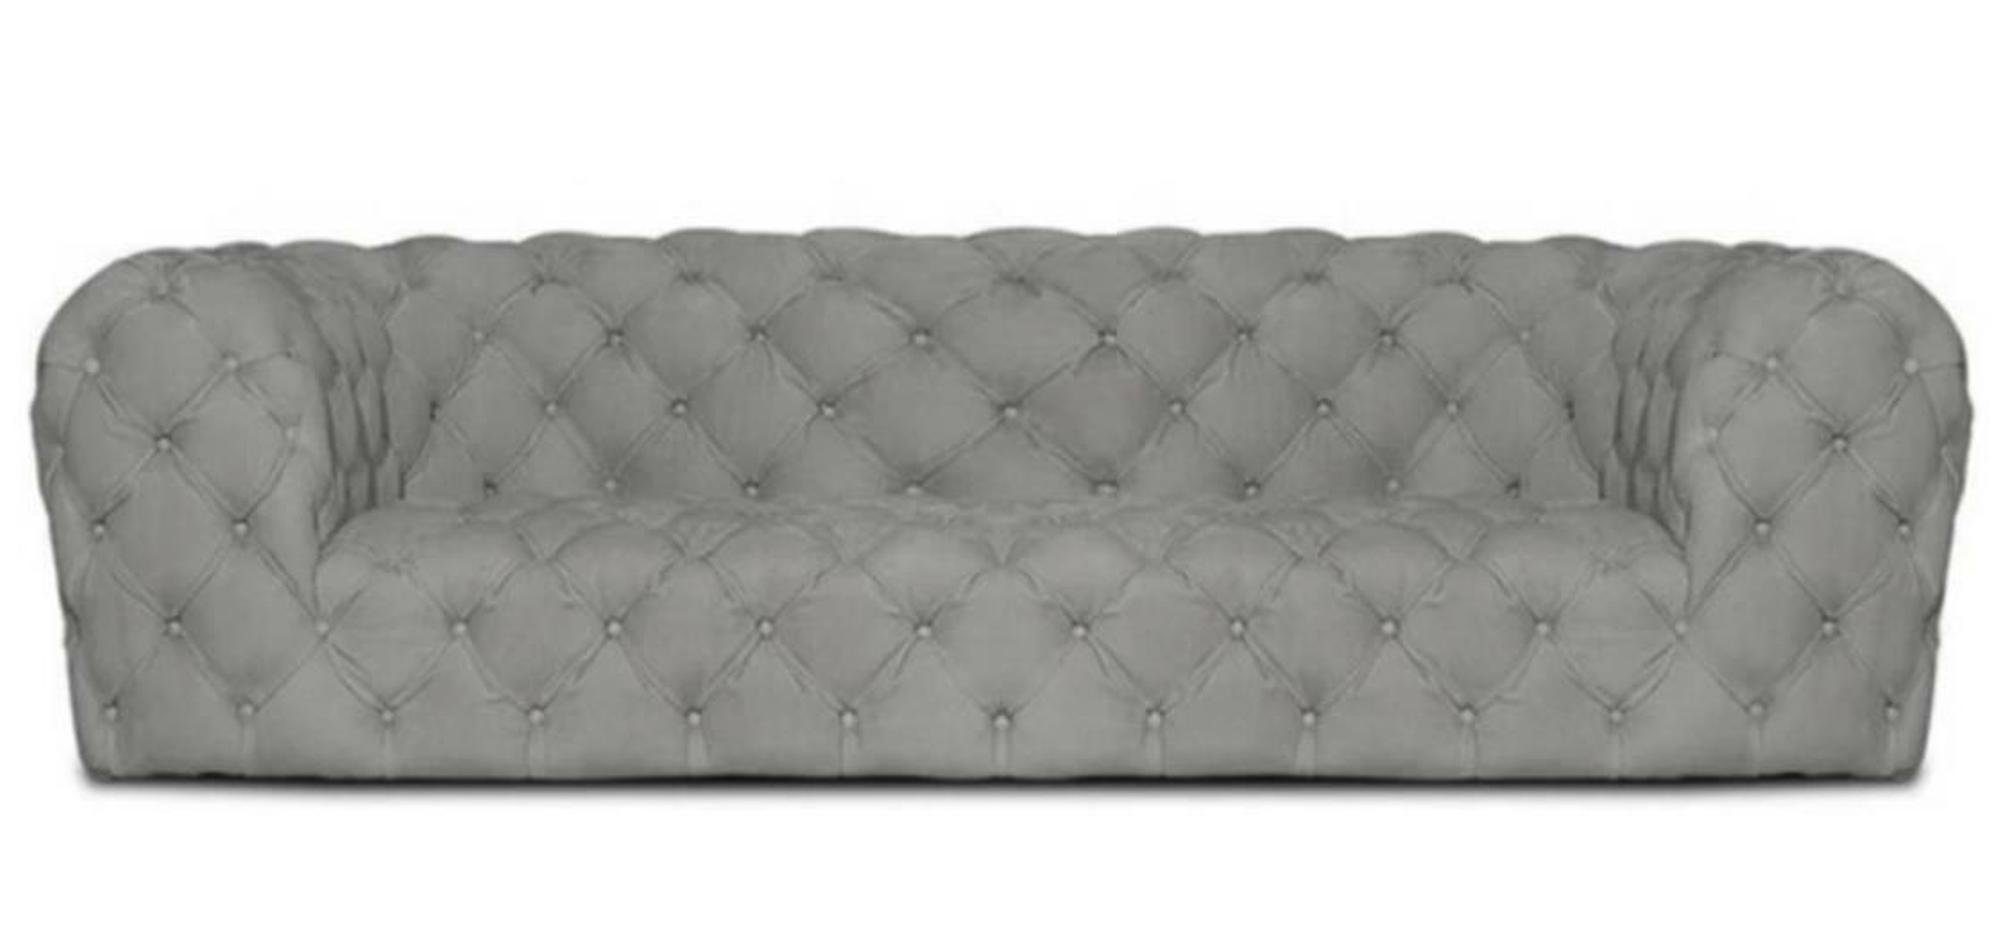 JVmoebel Chesterfield-Sofa, Grau Wohnzimmer Modern Stoff Couchen Chesterfield Sofa Design Möbel